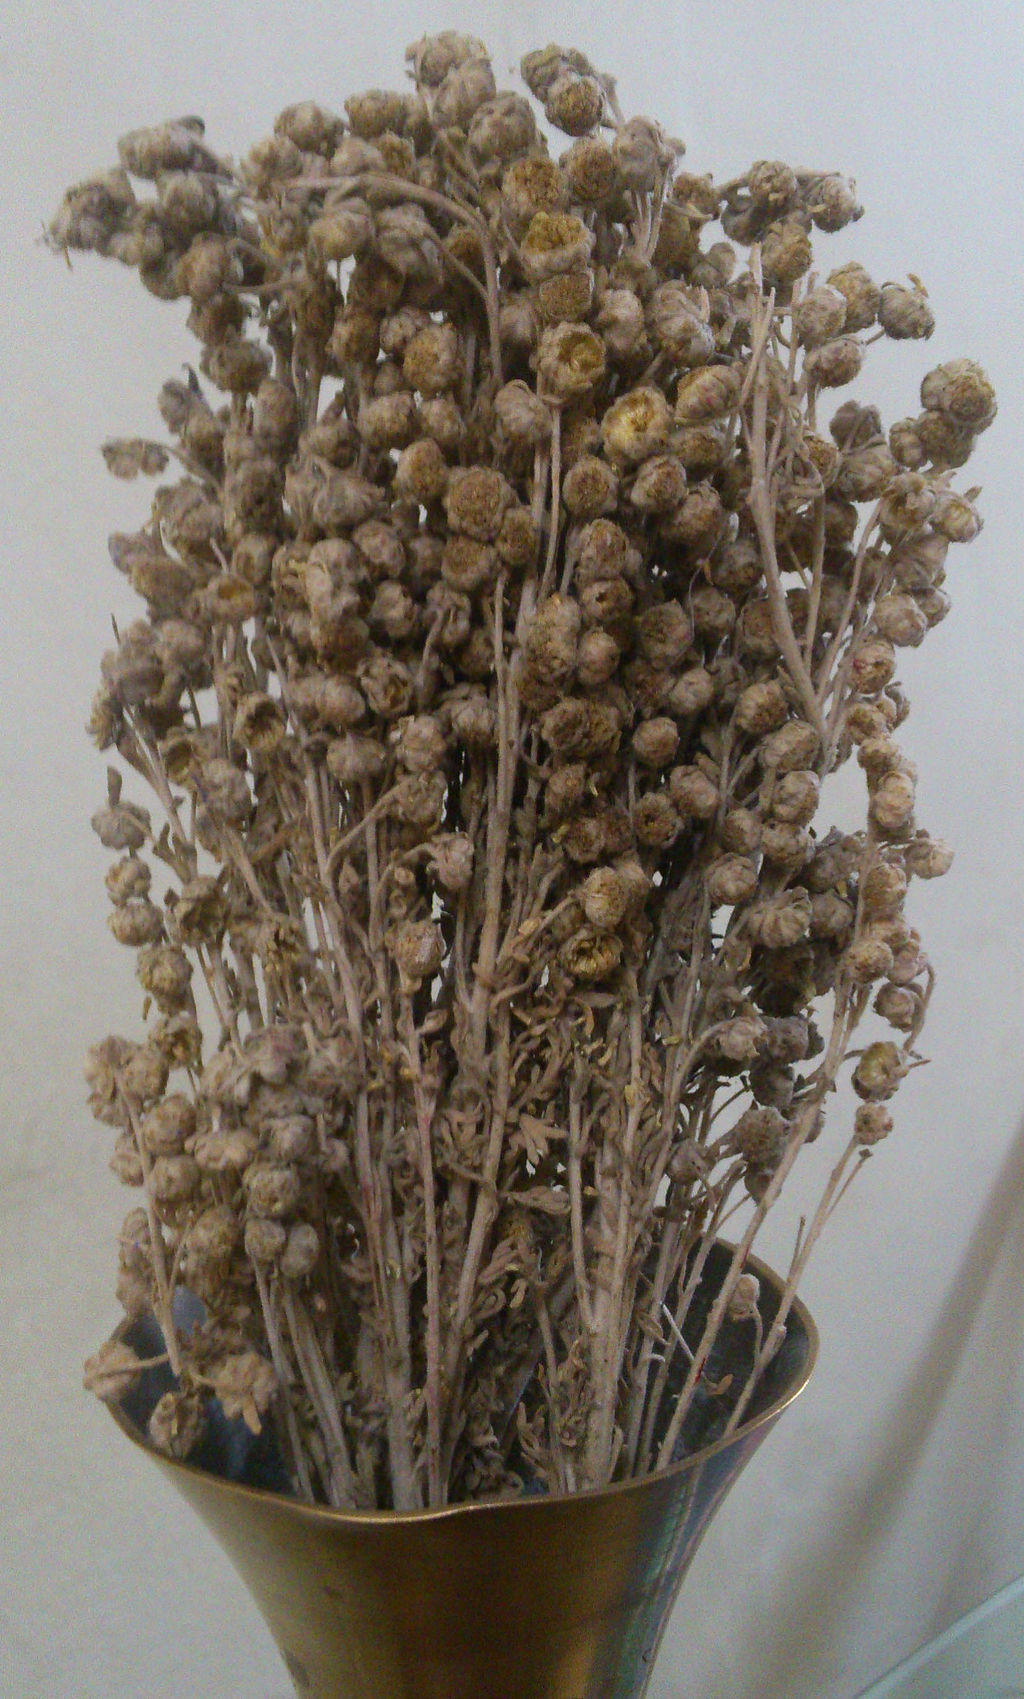 dried davana flowers in vase